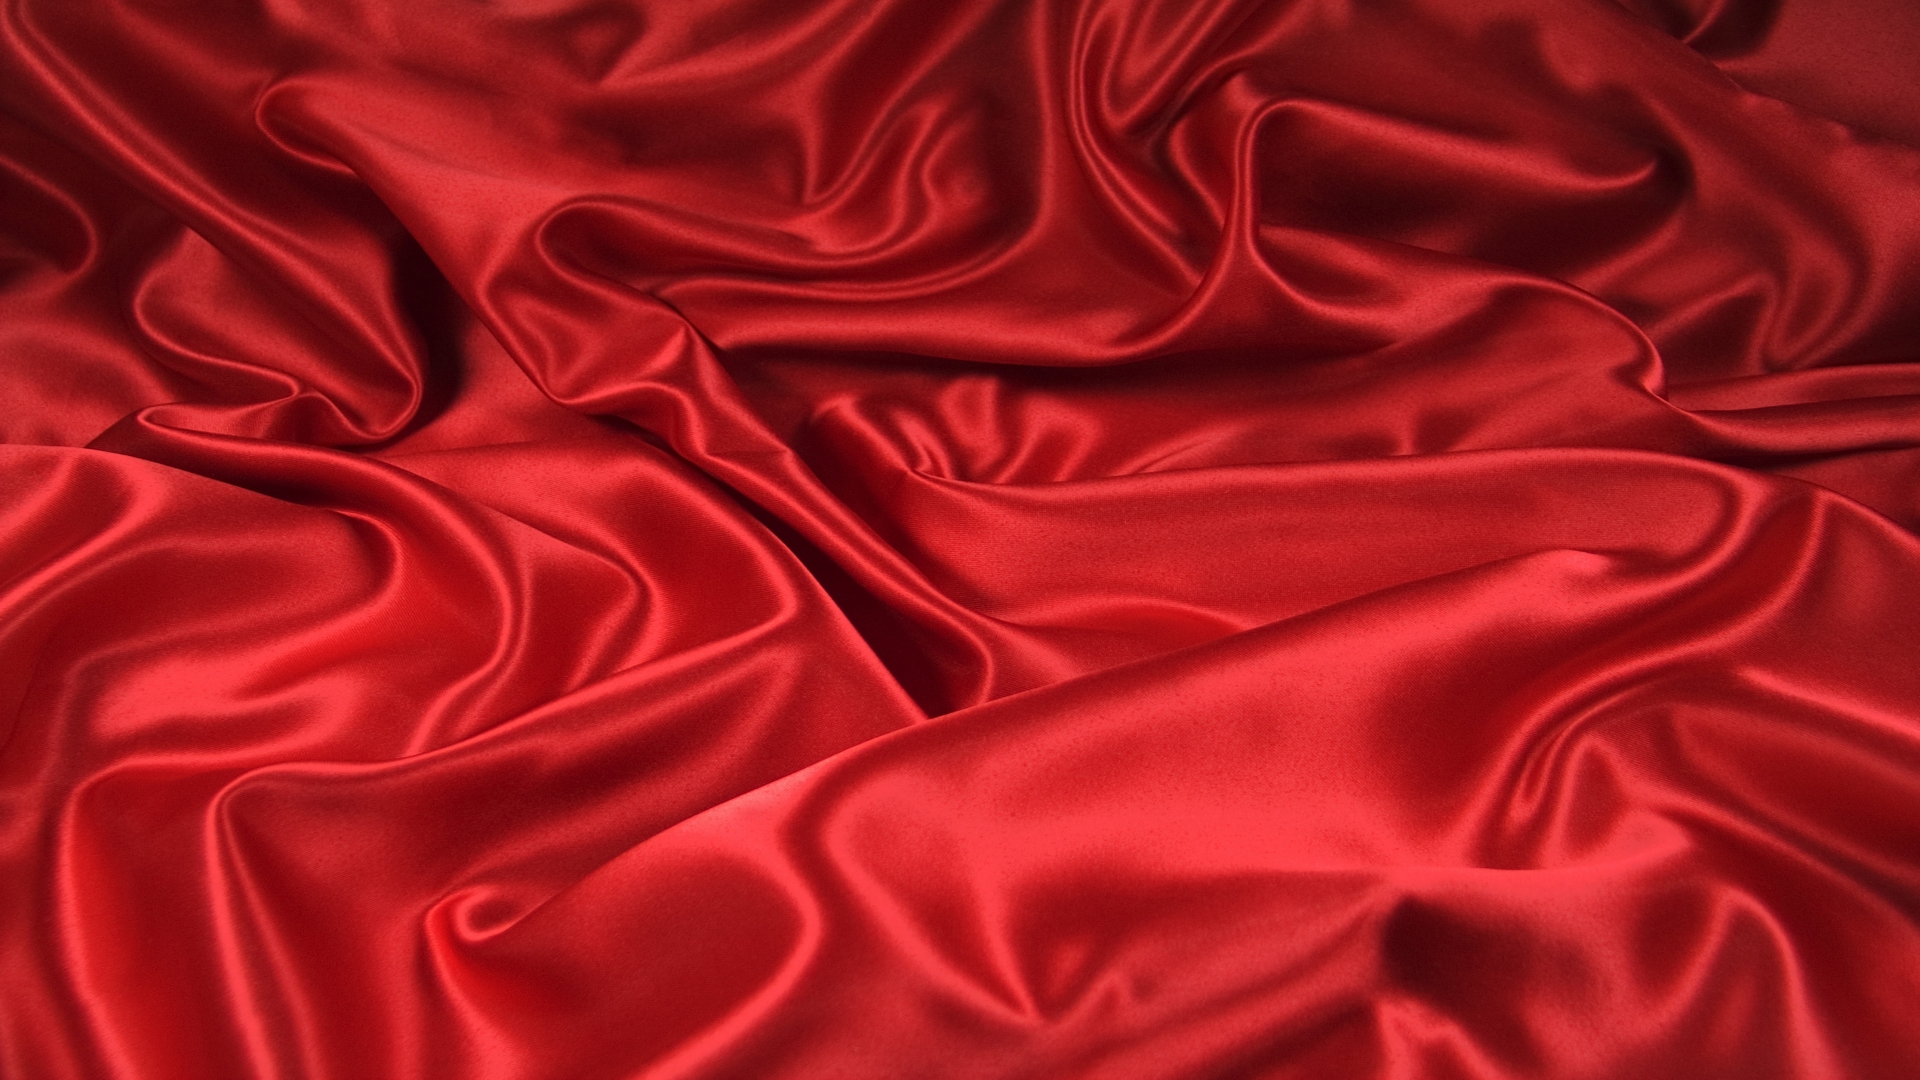 Red Silk HD Wallpaper 53922 1920x1080px